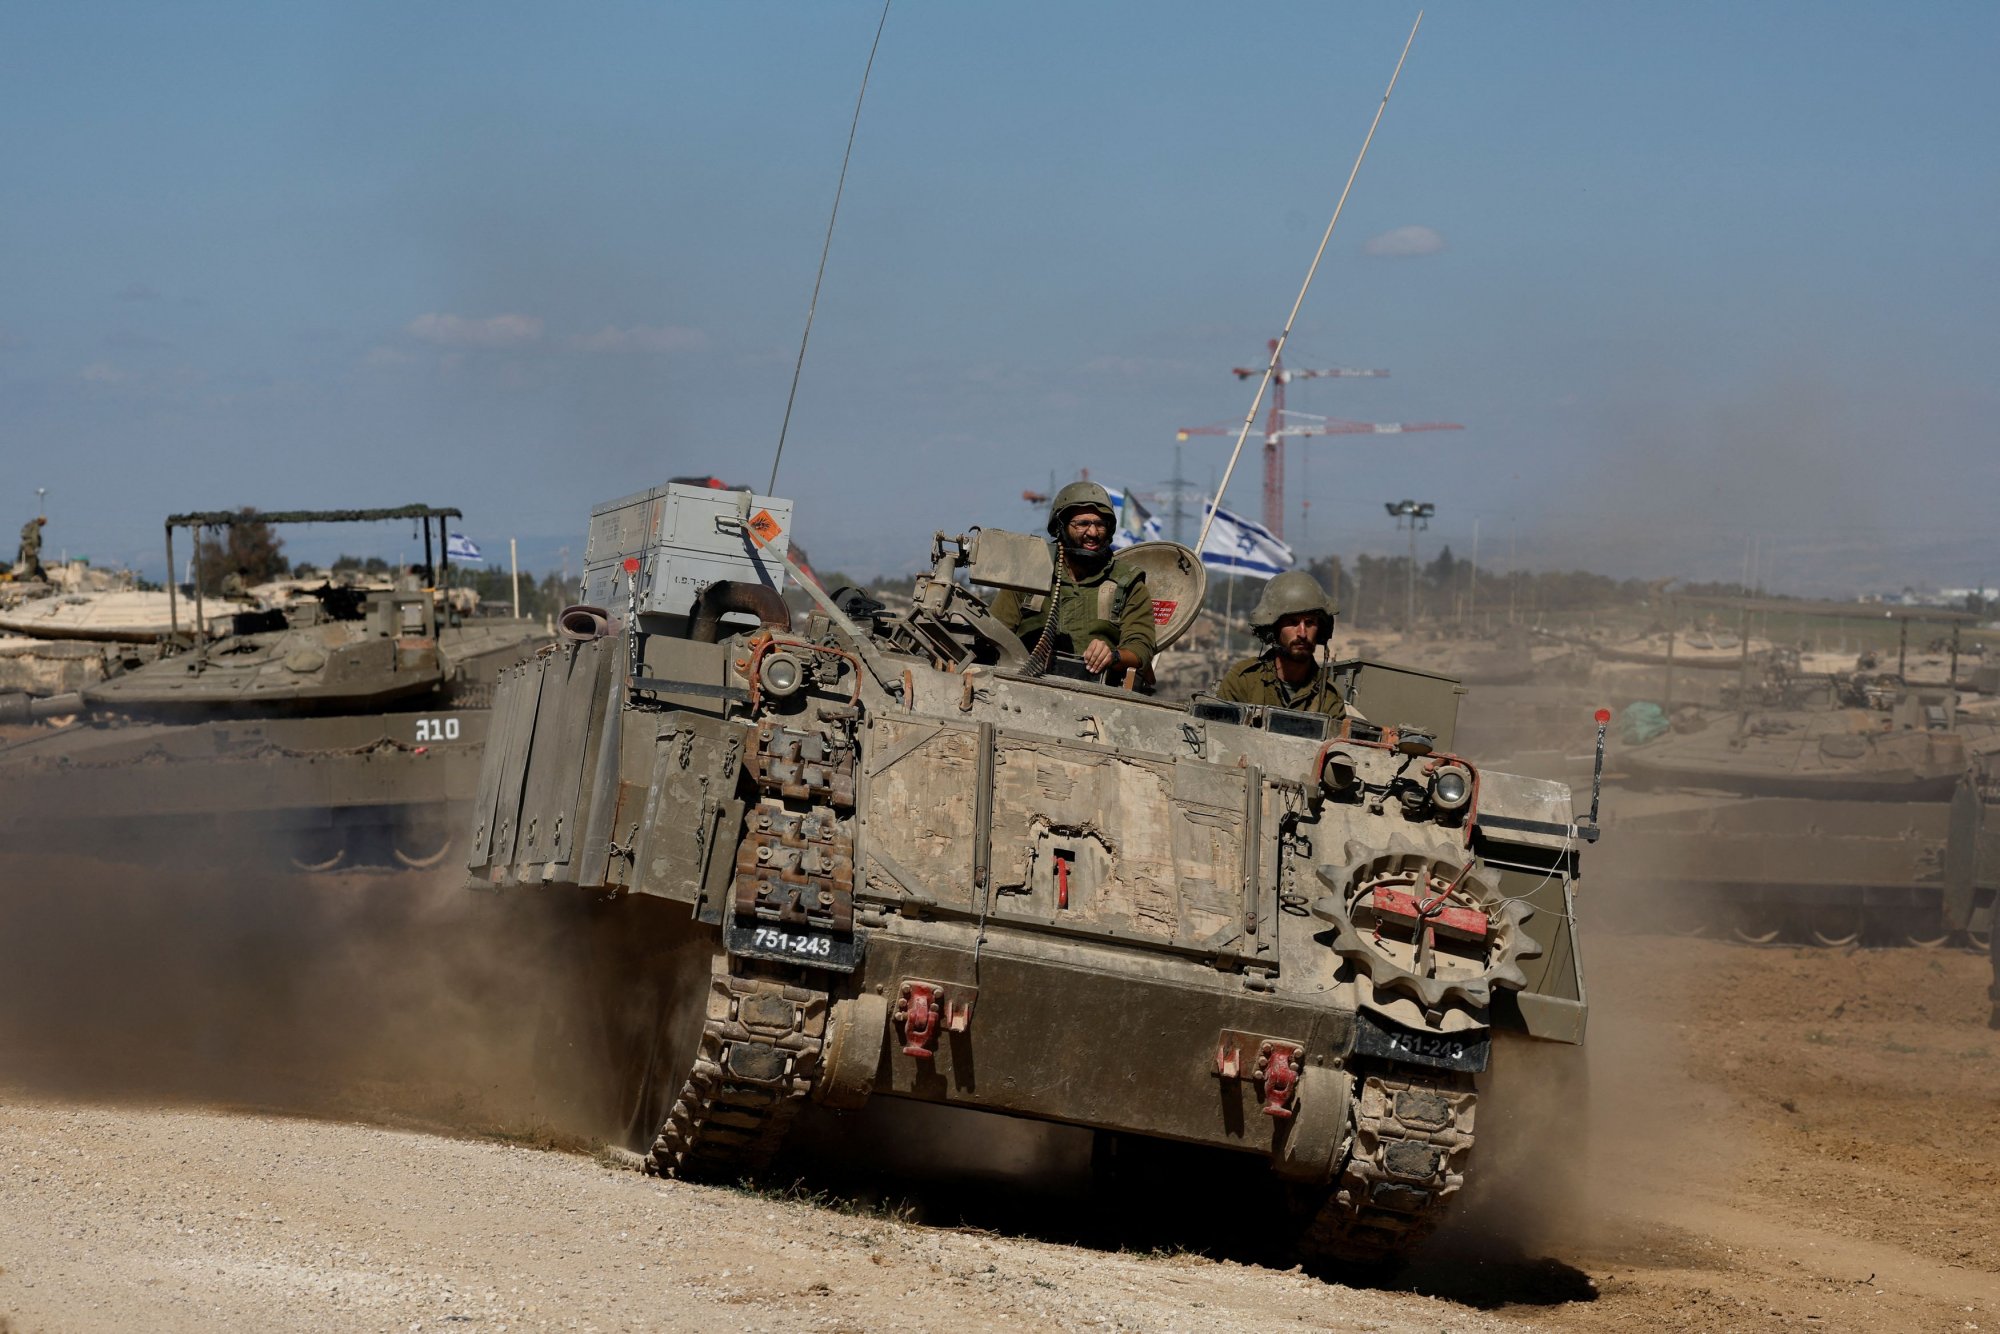 Οι ΗΠΑ ακύρωσαν αποστολή όπλων προς το Ισραήλ λόγω Ράφας